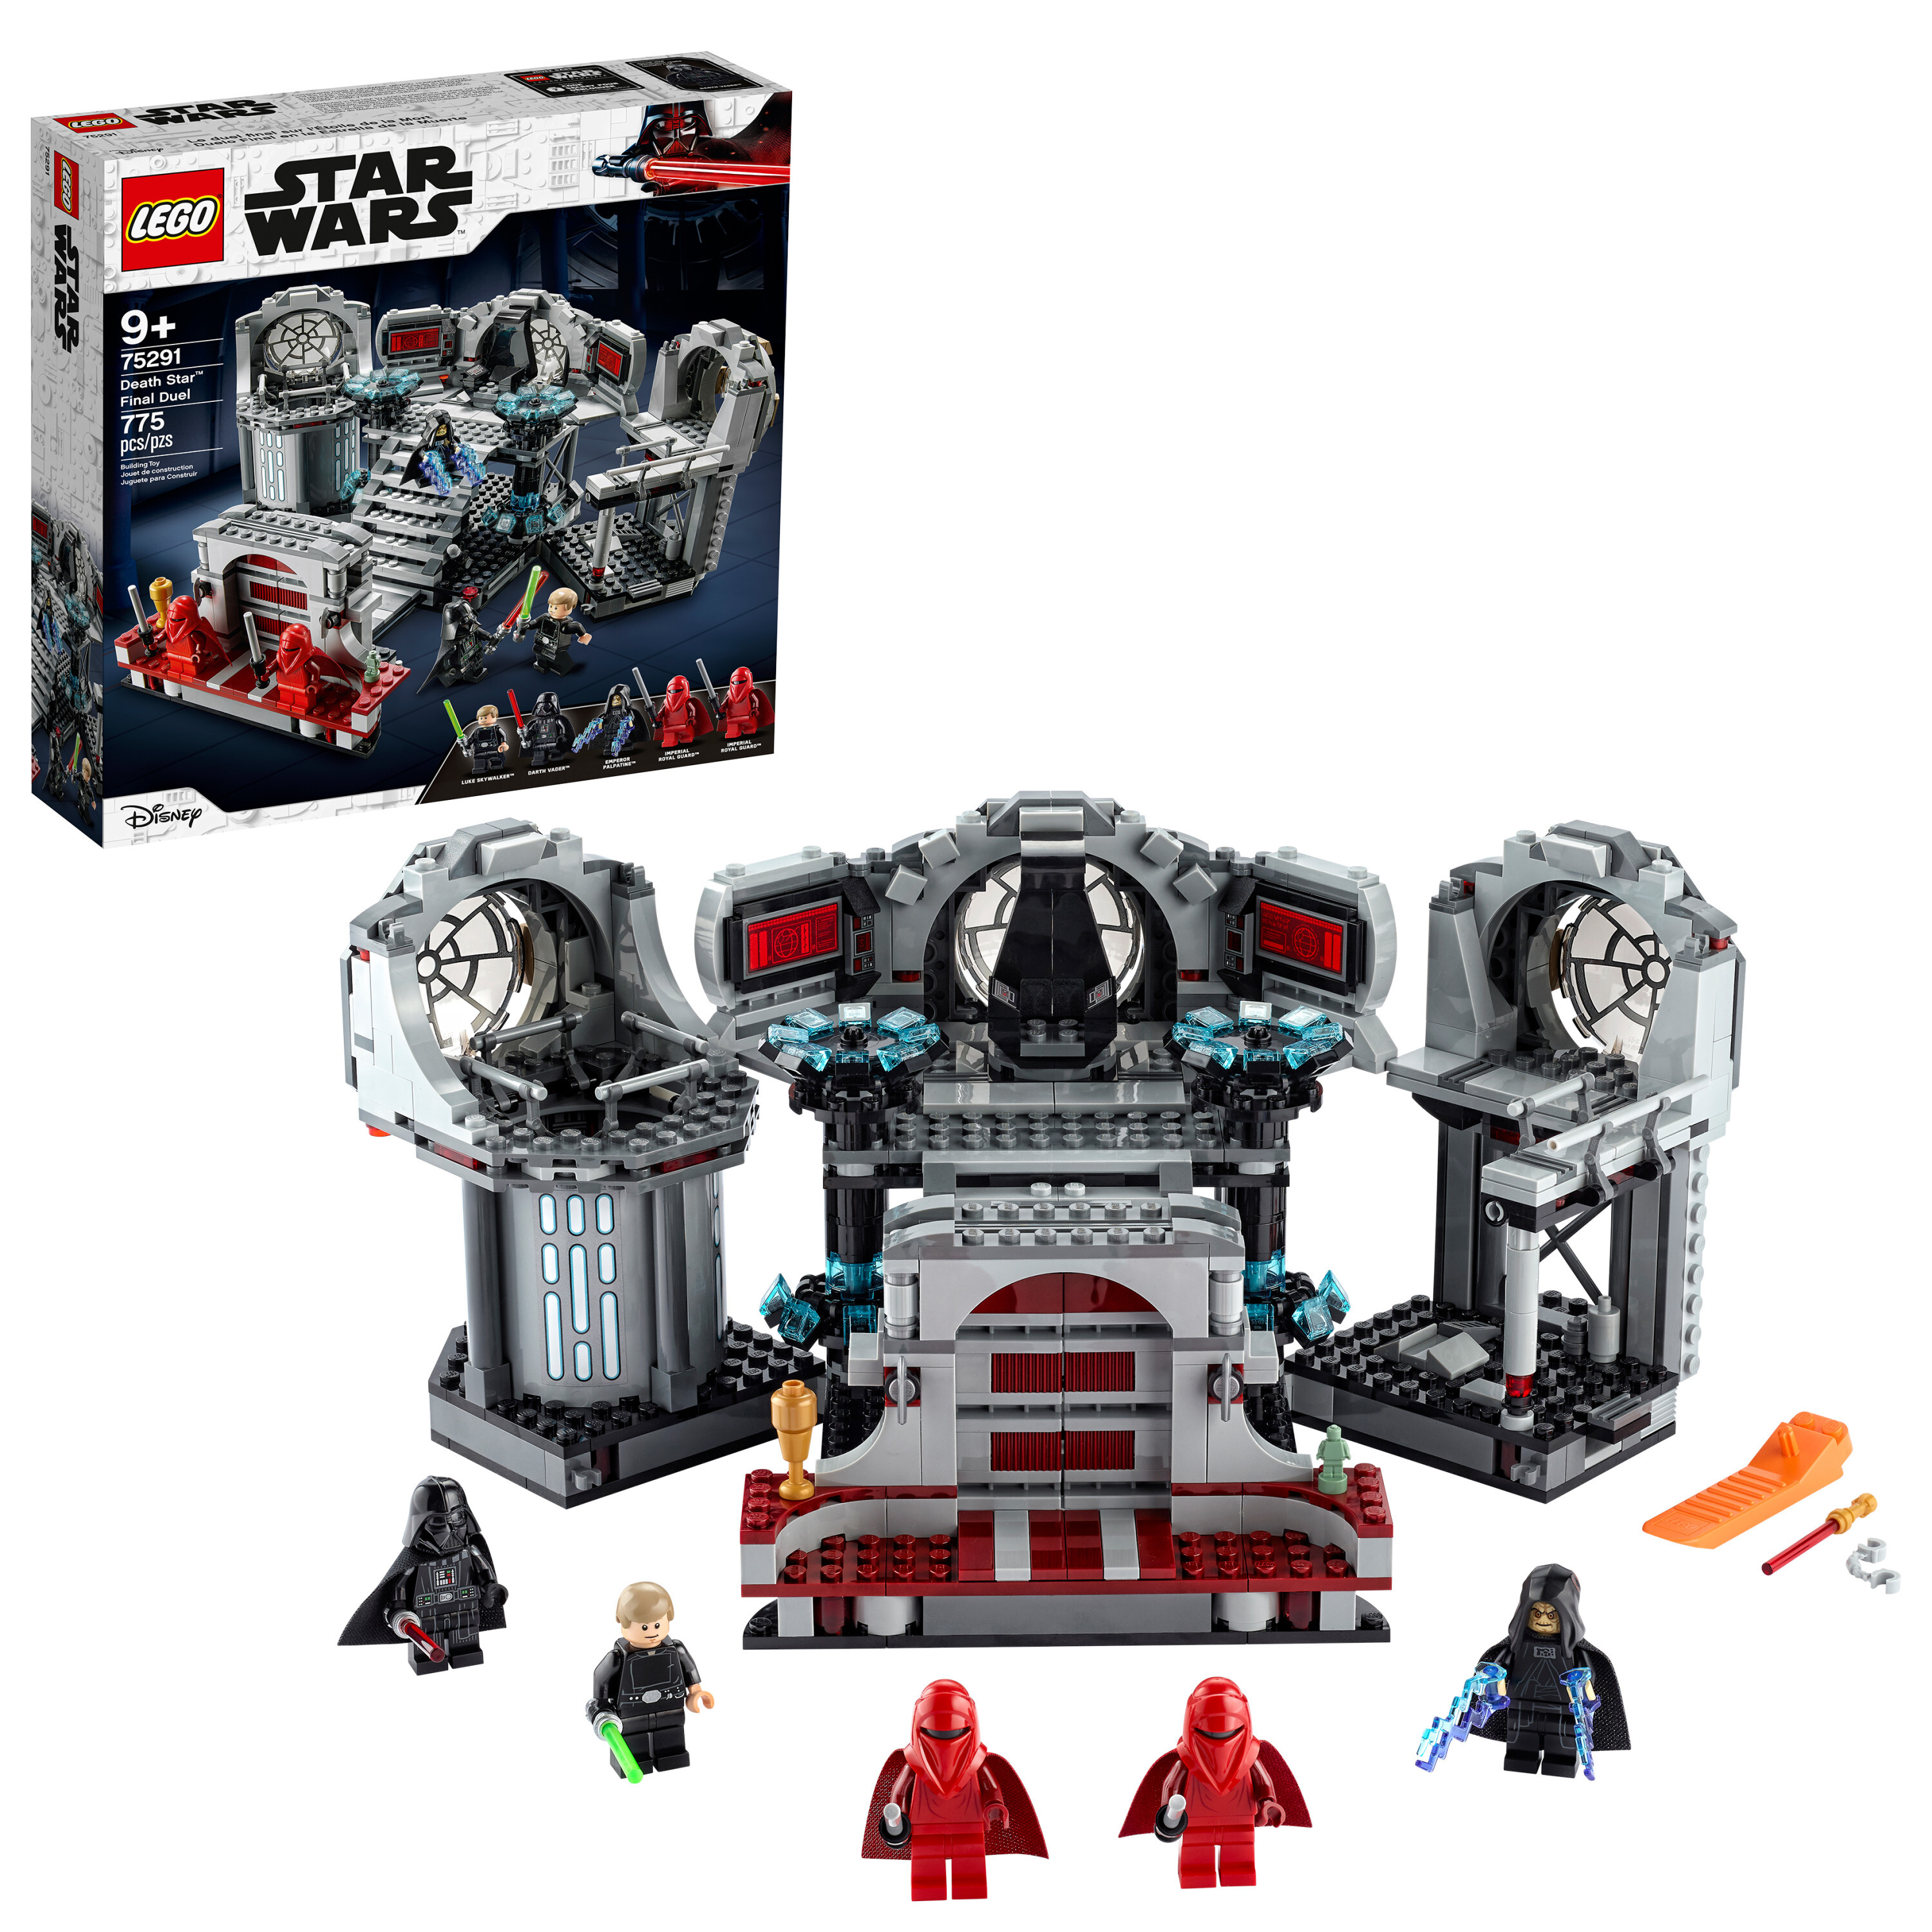 Đồ chơi lắp ráp Lego Star Wars 75291 Death Star Final Duel